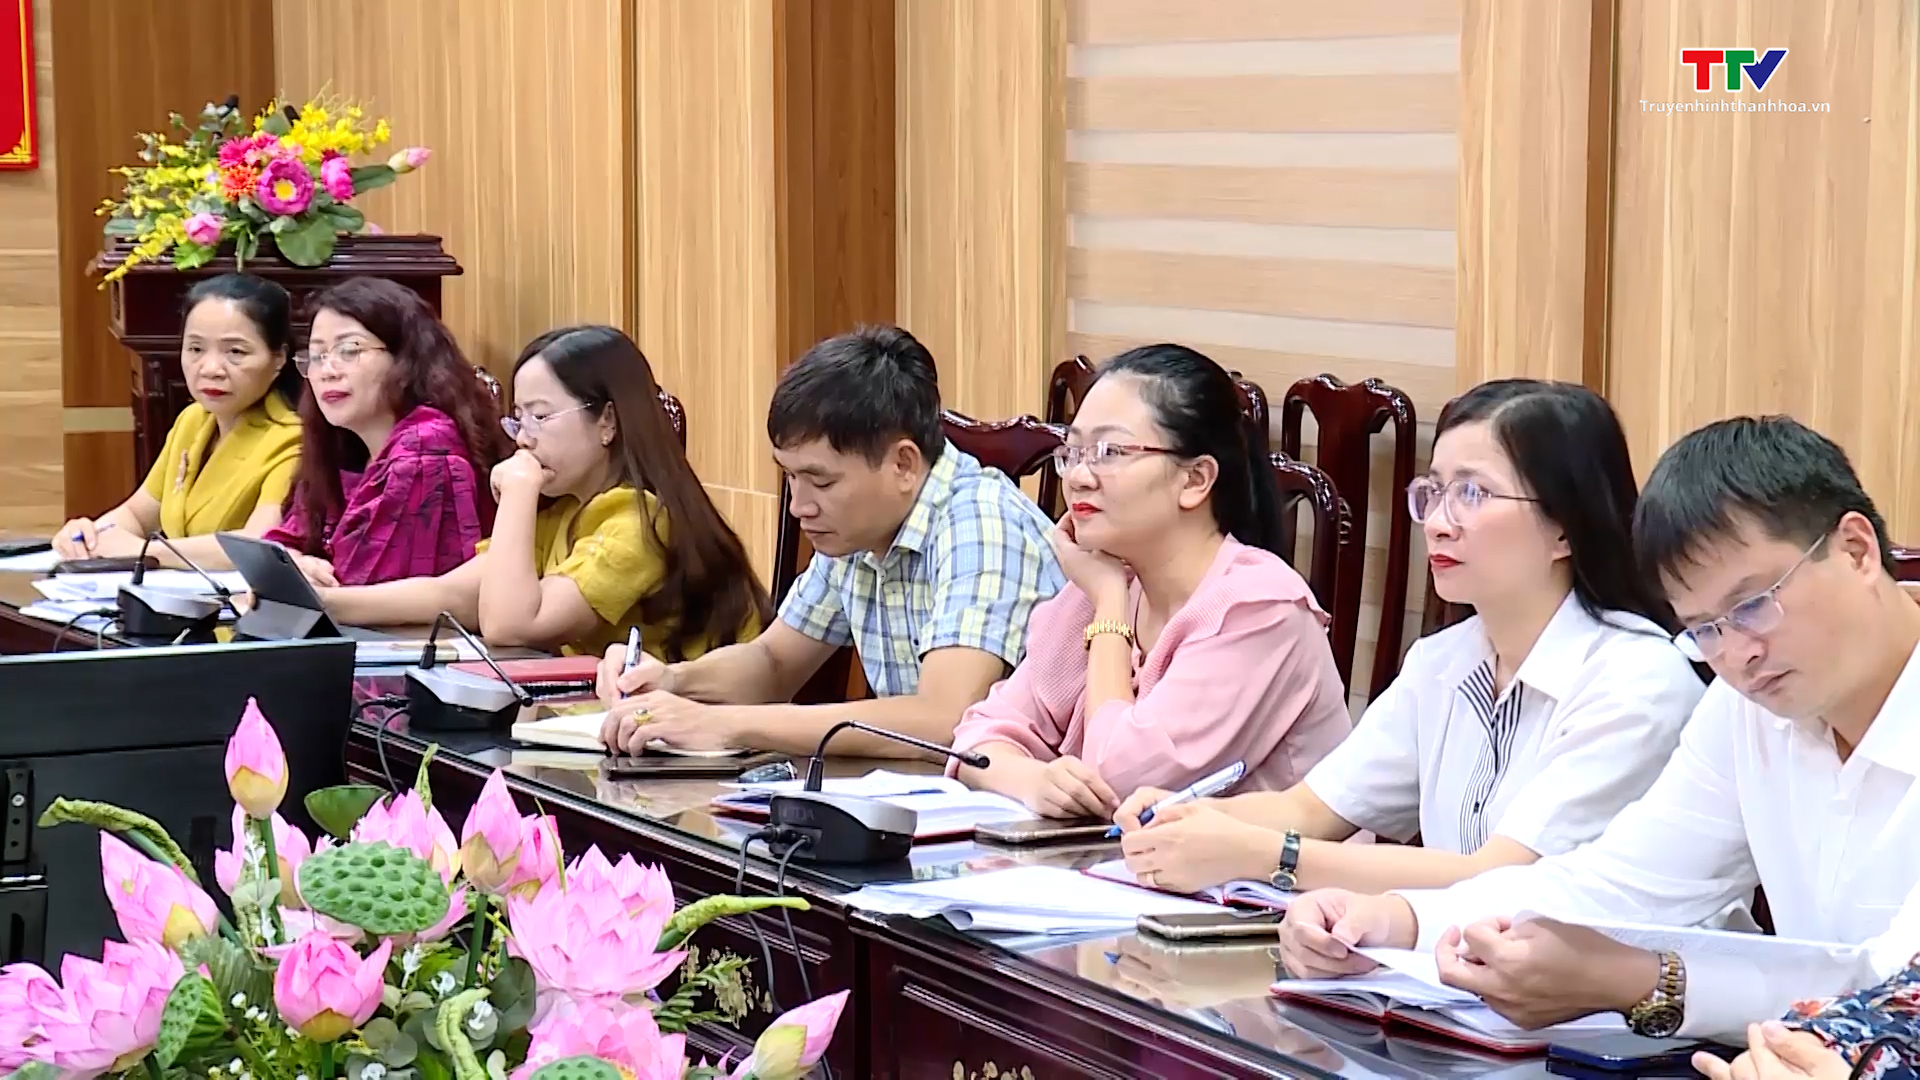 Hội thảo vai trò của gia đình, dòng họ trong xây dựng xã hội học tập, góp phần giữ gìn, phát huy giá trị văn hoá và những phẩm chất tốt đẹp của con người Việt Nam trong thời kỳ mới - Ảnh 3.